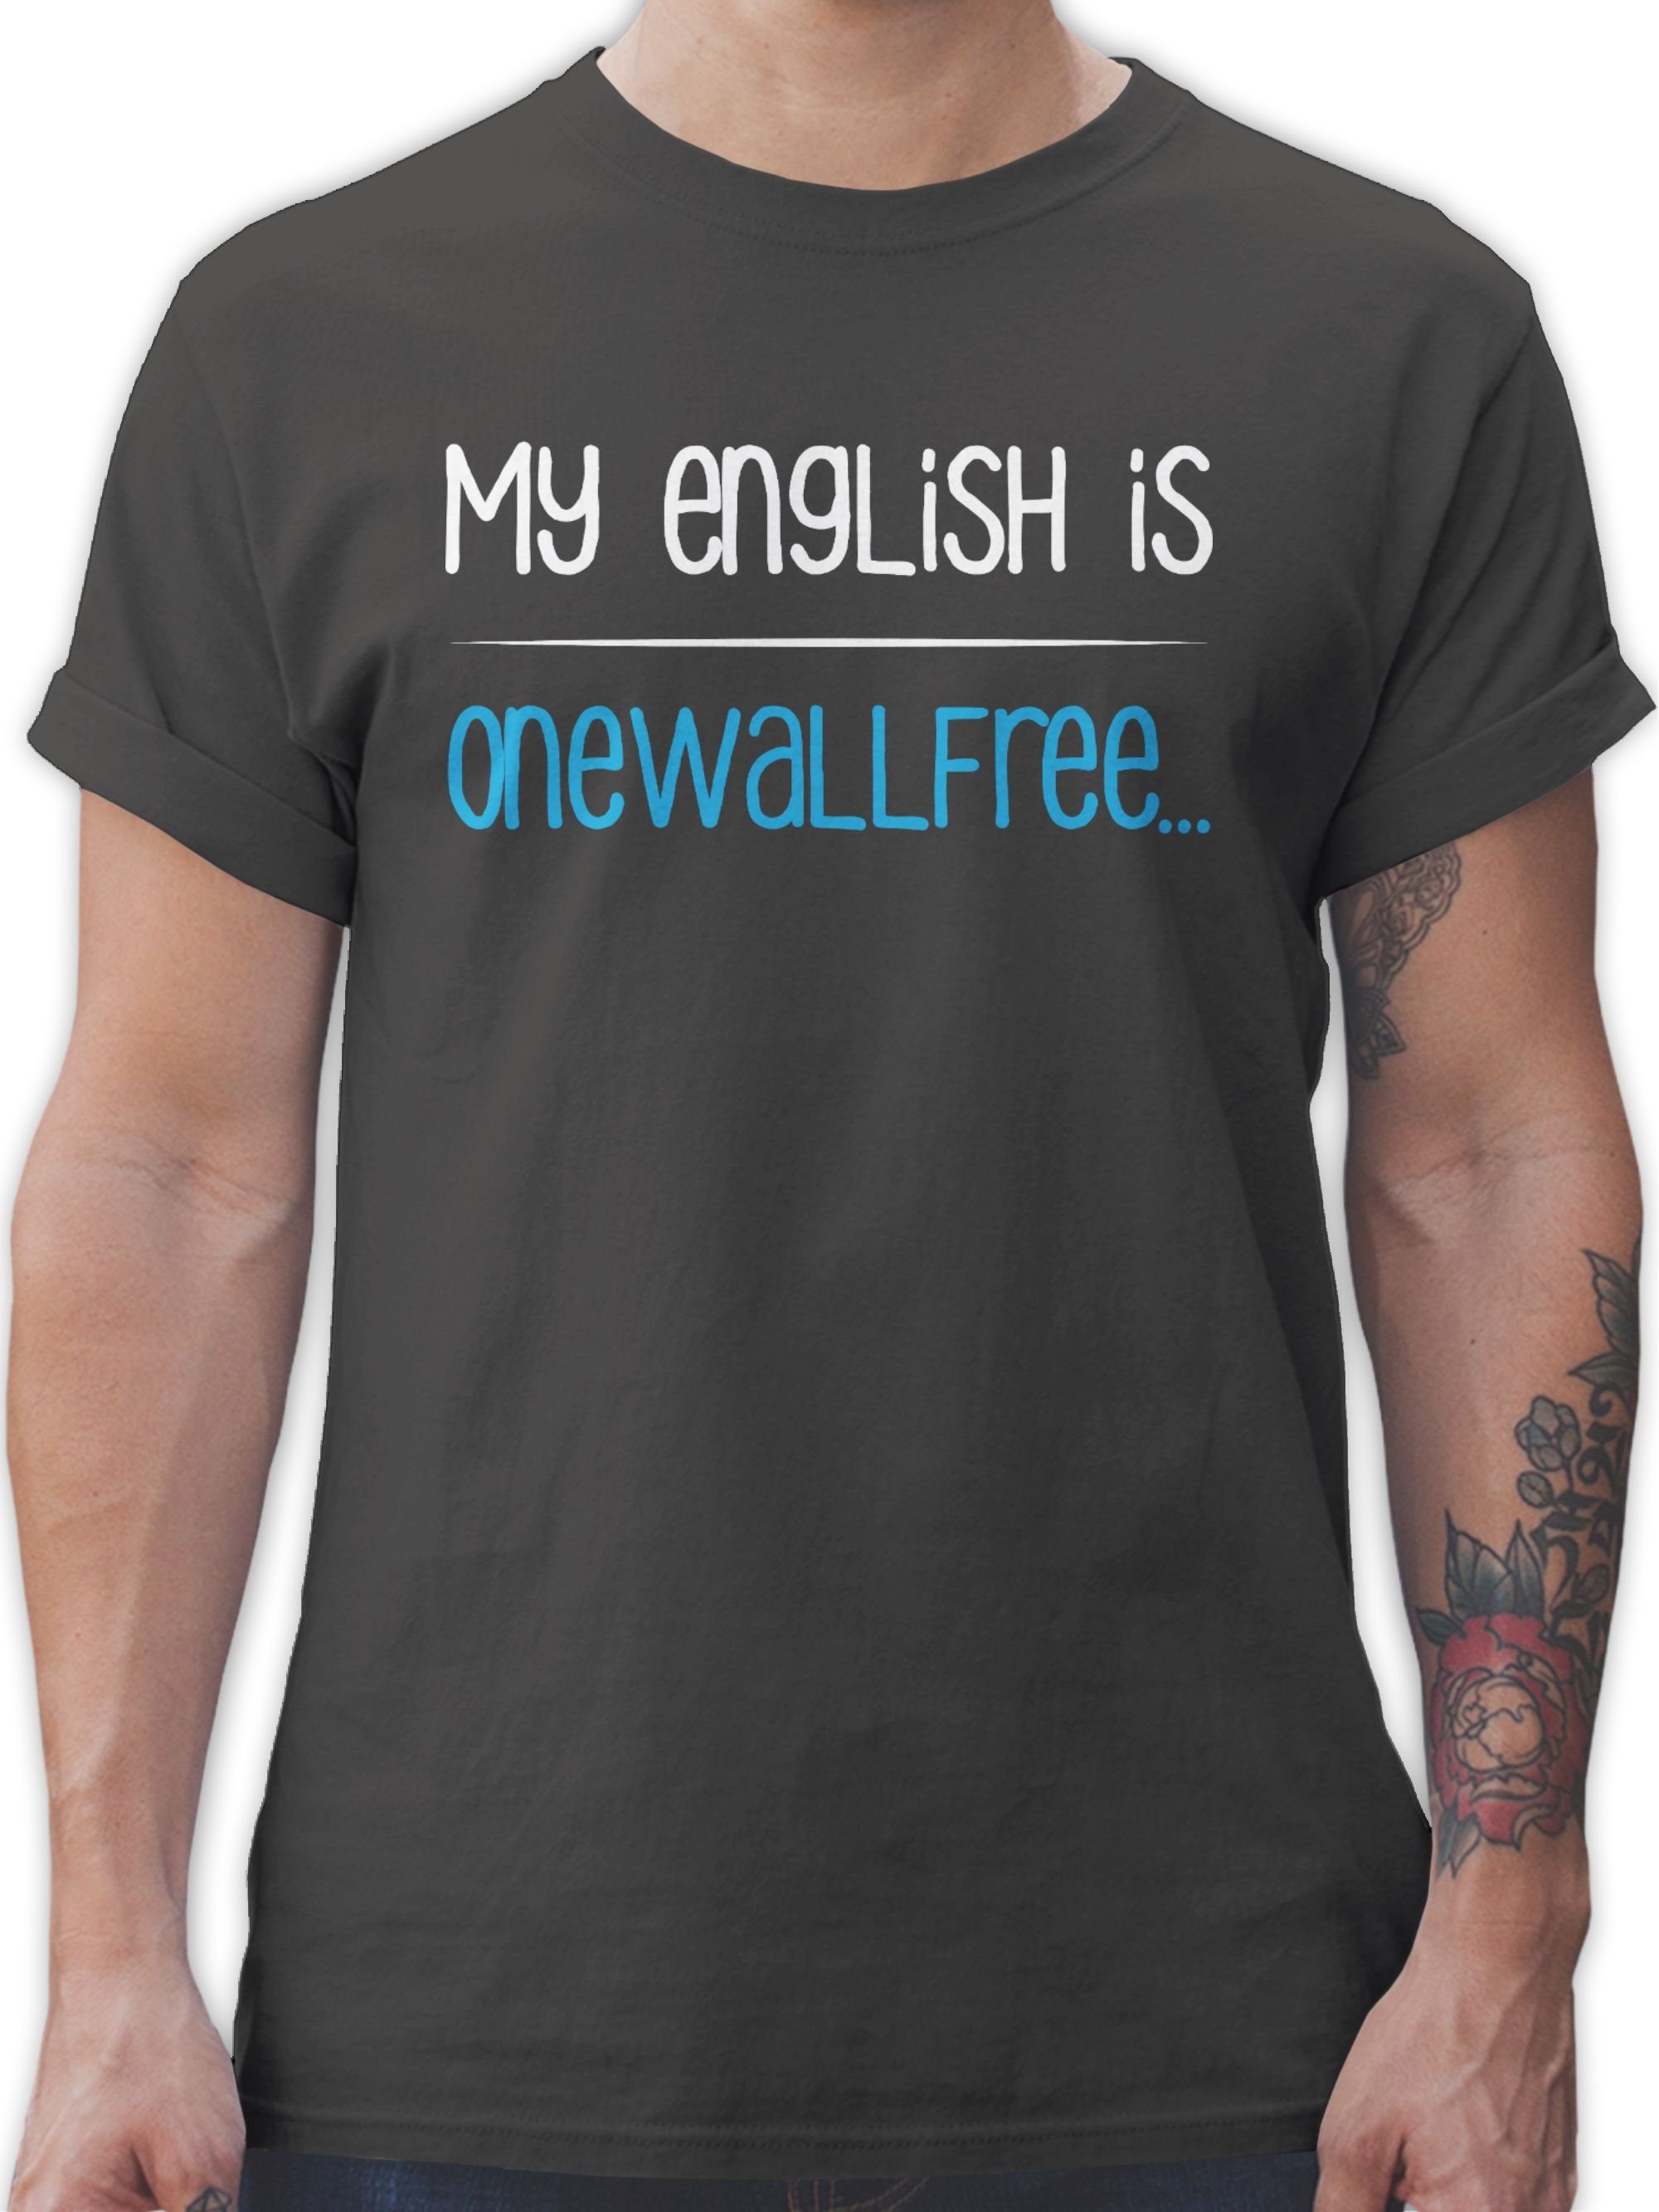 Shirtracer T-Shirt My english is onewallfree - Denglisch Sprüche Statement mit Spruch 03 Dunkelgrau